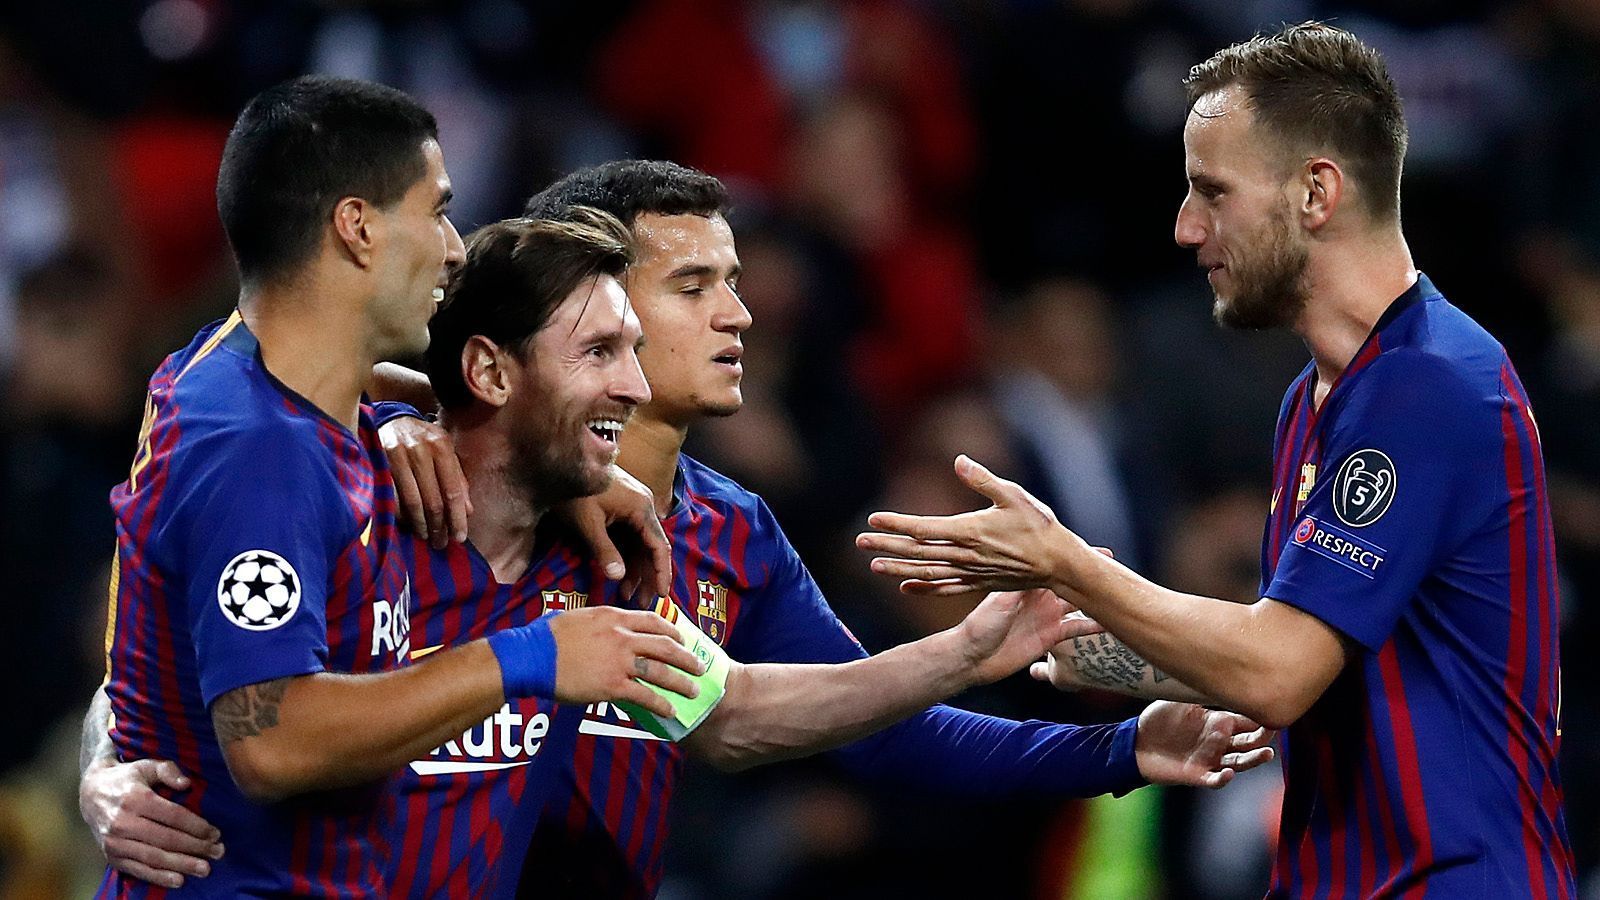 
                <strong>Platz 1: FC Barcelona</strong><br>
                Barcelona ist Messi und Messi ist Barcelona. Der Argentinier definiert in dieser Saison wieder einmal die Schönheit des Fußballs. In der Gruppenphase schoss er sechs Tore und bereitete eins vor. Dabei verpasste er zwei Partien mit einem gebrochenen Unterarm und spielte beim finalen Gruppenspiel nur 27 Minuten. Weil Messi sich in blendender Verfassung befindet, ist Barcelona eine Stufe stärker. Die Katalanen sind das Maß in der Champions League - auch, weil sie in einer namhaften Gruppe mit Inter, Tottenham und PSV kein Spiel verloren. 
              